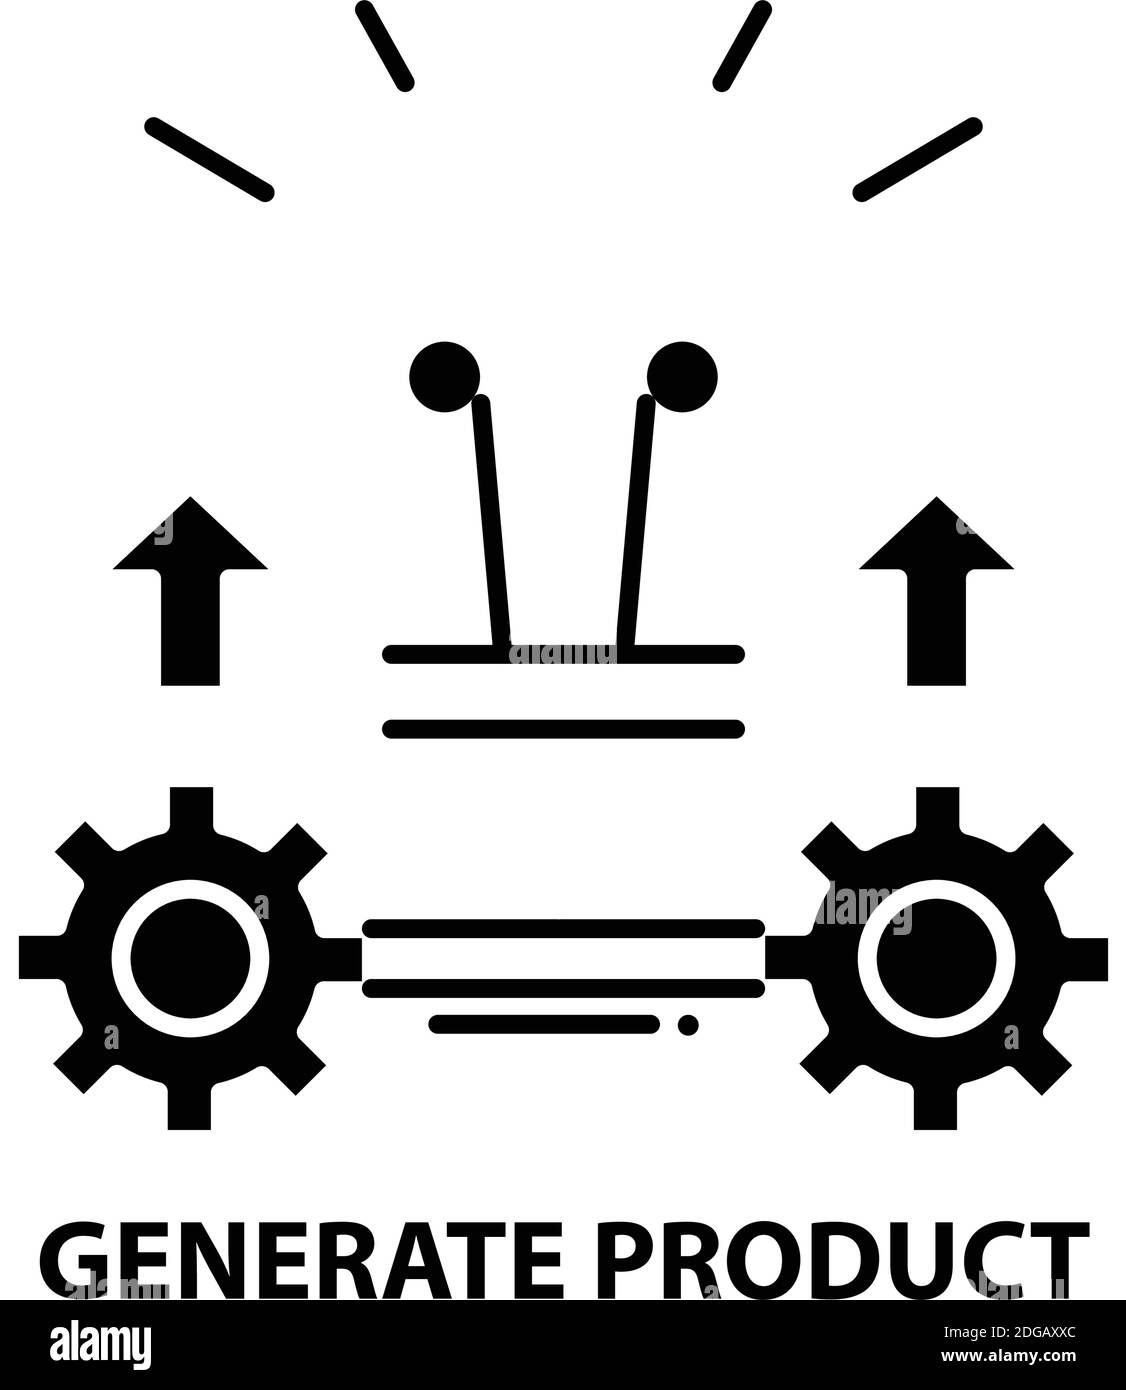 Produktsymbol generieren, schwarzes Vektorzeichen mit bearbeitbaren Konturen, Konzeptdarstellung Stock Vektor